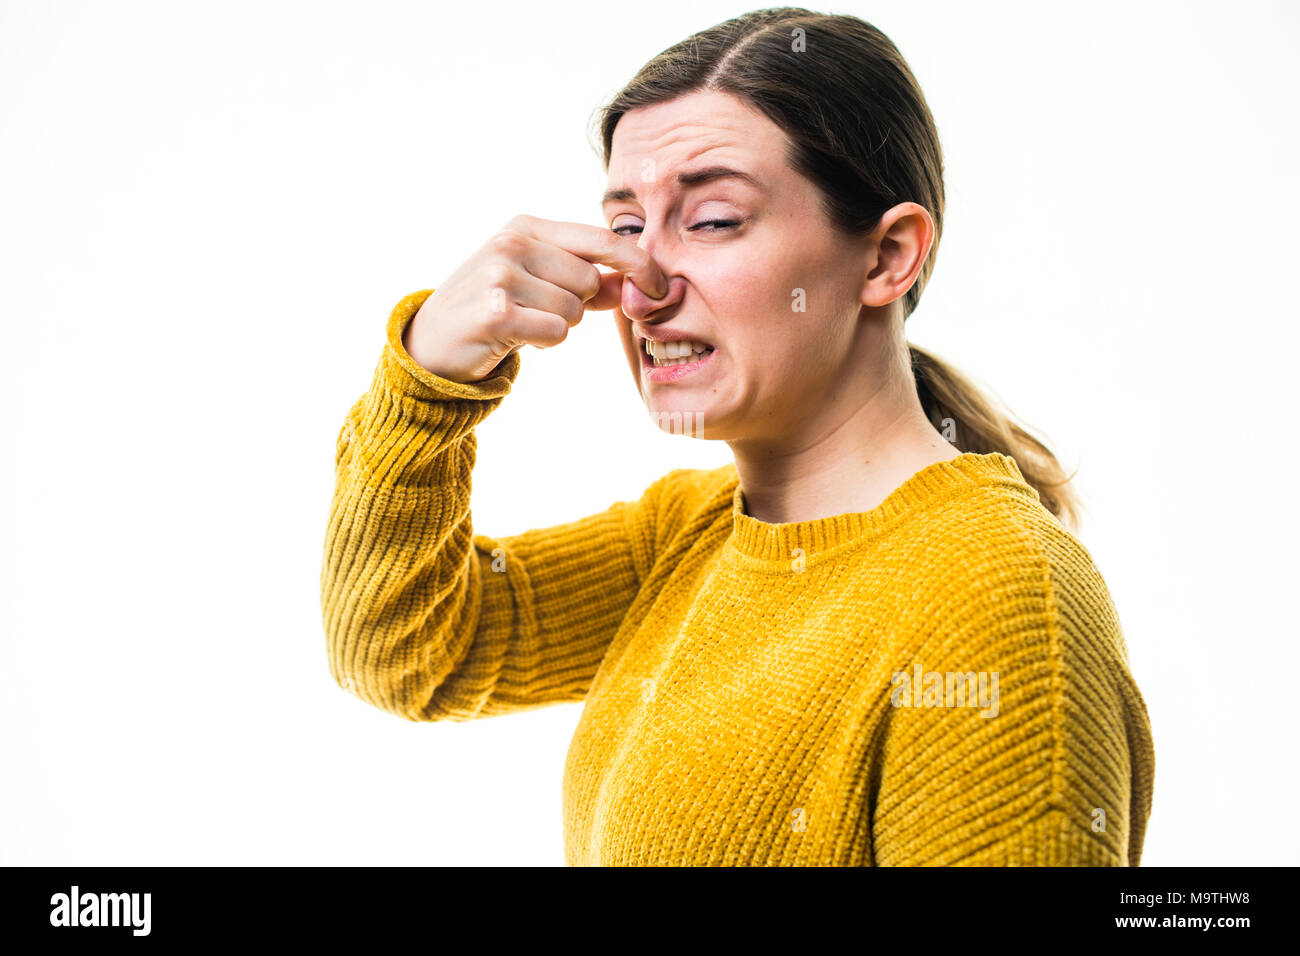 Eine junge Kaukasier Frau Mädchen mit einem gelben Pullover Pullover, Kneifen oder Ihre Nase heraus halten, zu einer schrecklichen übel riechenden Stinkigen schädliche, Umwelt, gegen einen weißen Hintergrund, Großbritannien block Stockfoto